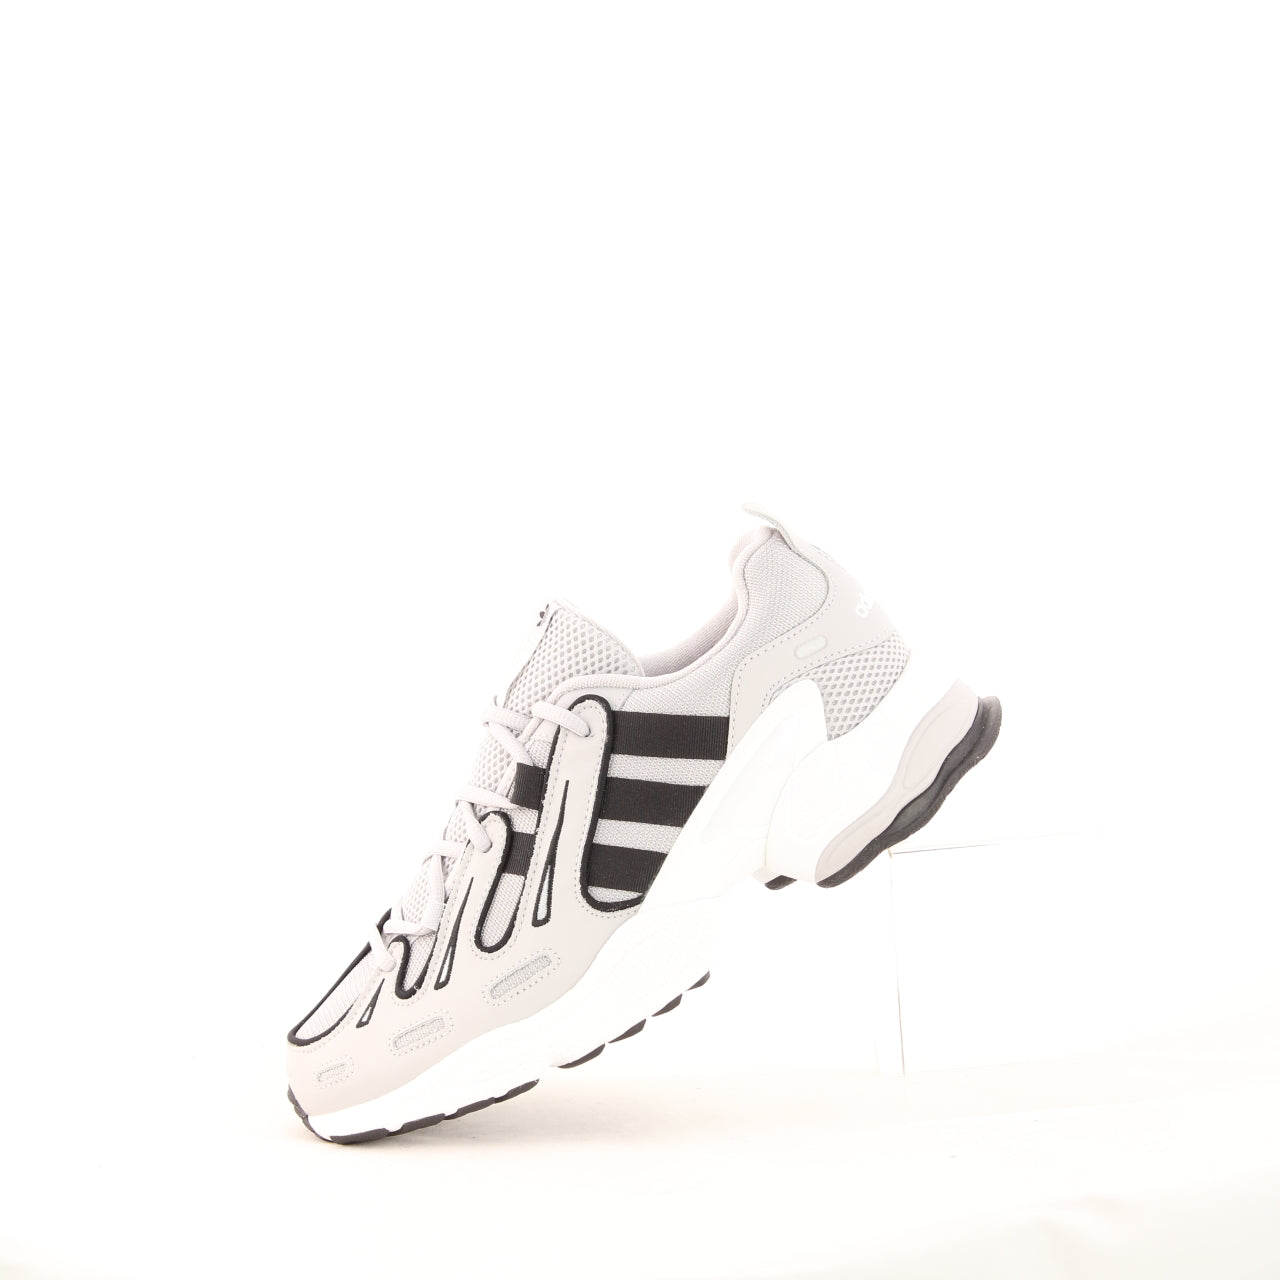 Adidas Originals EQT GAZELLE Herren Schuhe Sportschuhe Sneaker Leder Grau EE4772